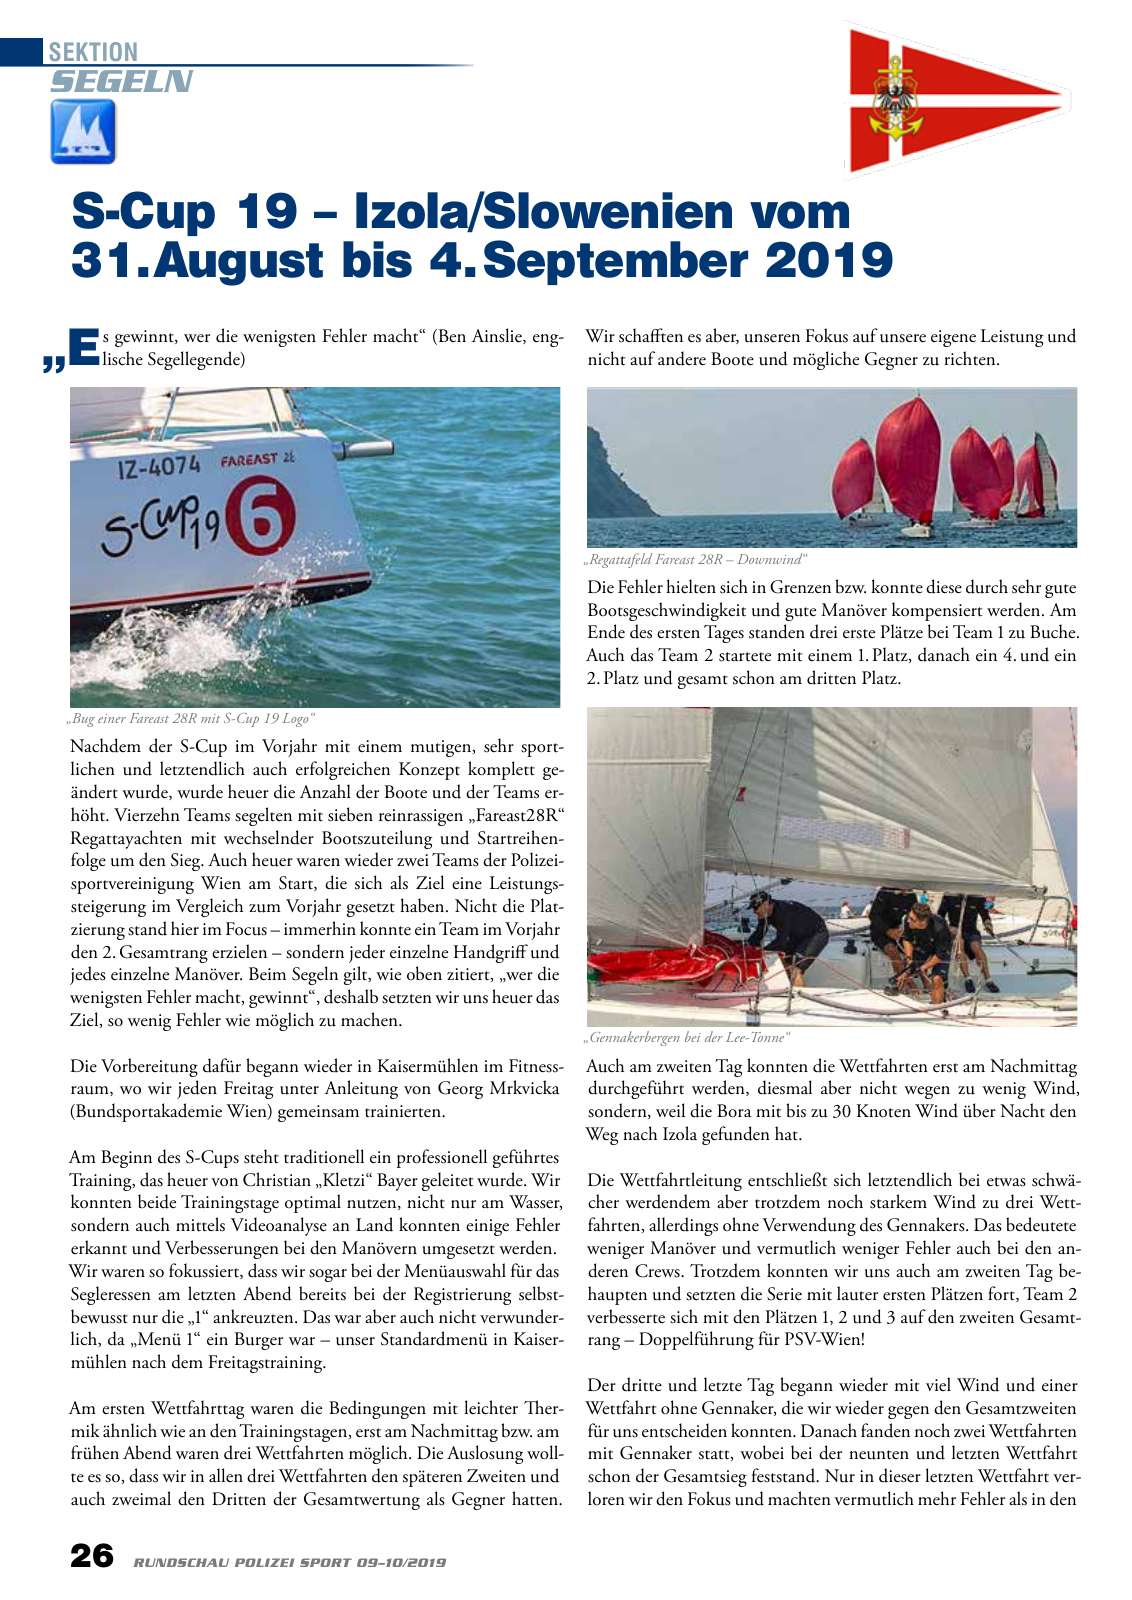 Vorschau Rundschau Polizei Sport 09-10/2019 Seite 26